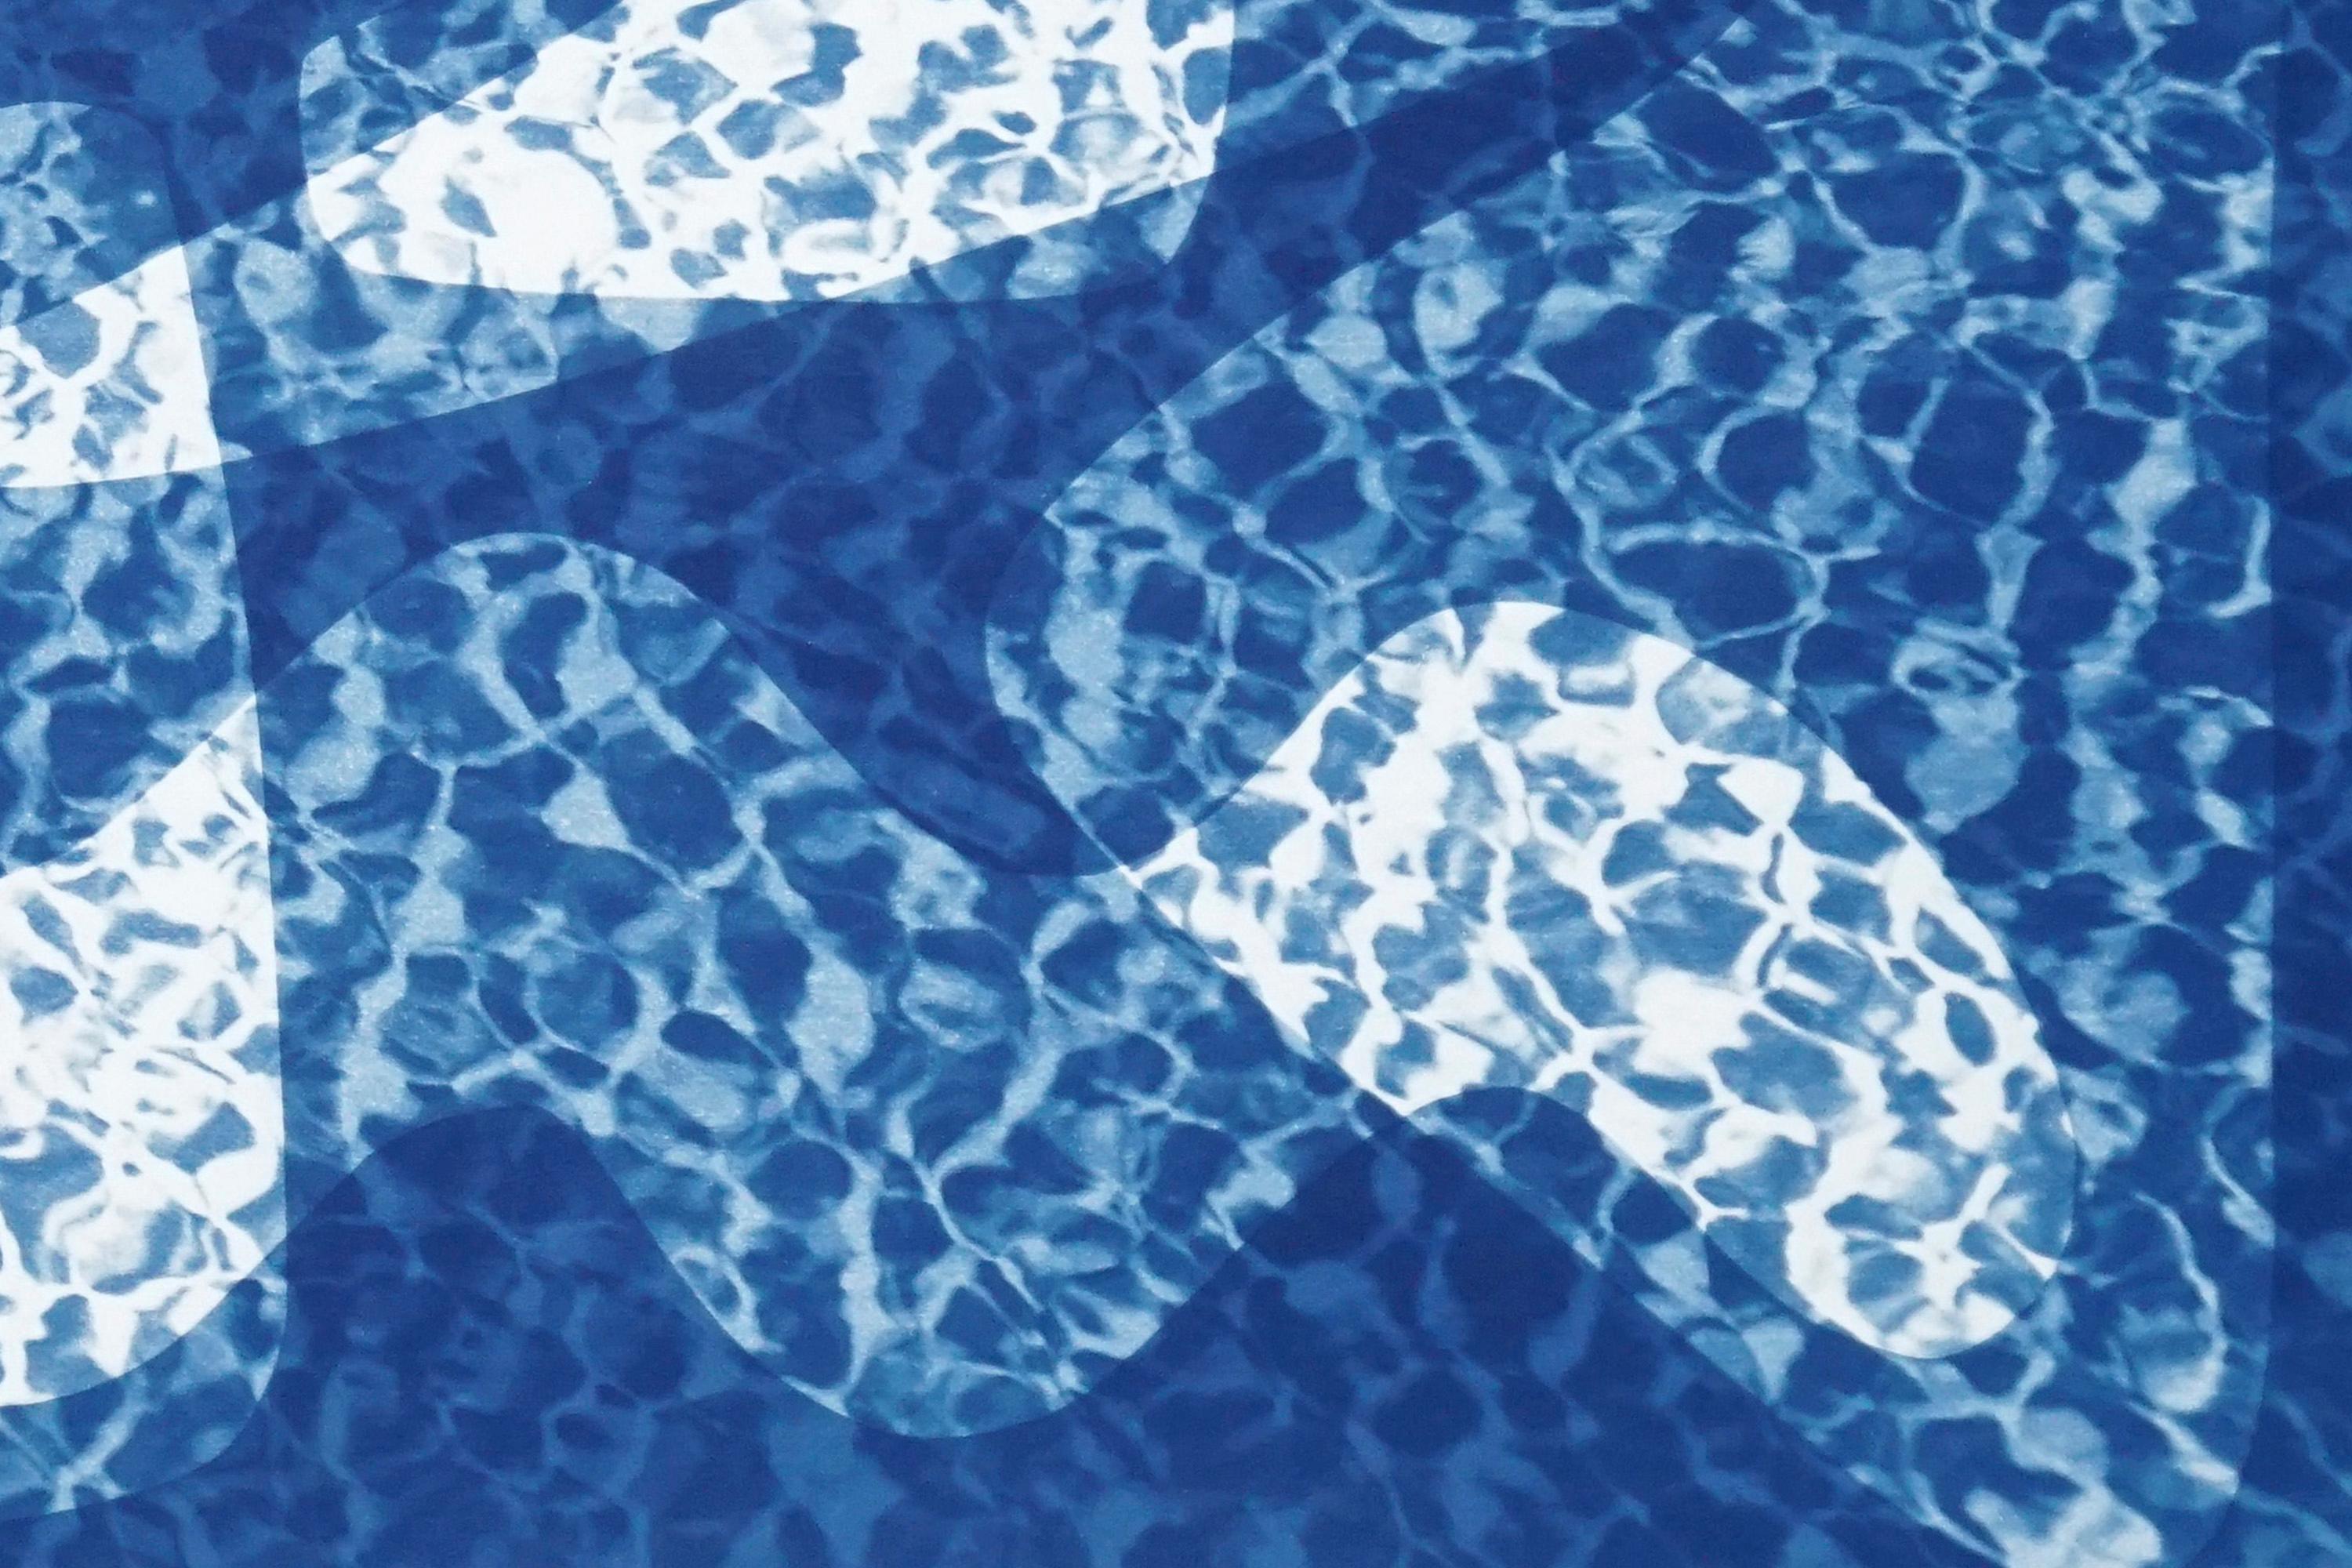 Monotype contemporain de cyanotype de formes du milieu du siècle sous l'eau  dans les tons froids - Bleu Abstract Photograph par Kind of Cyan